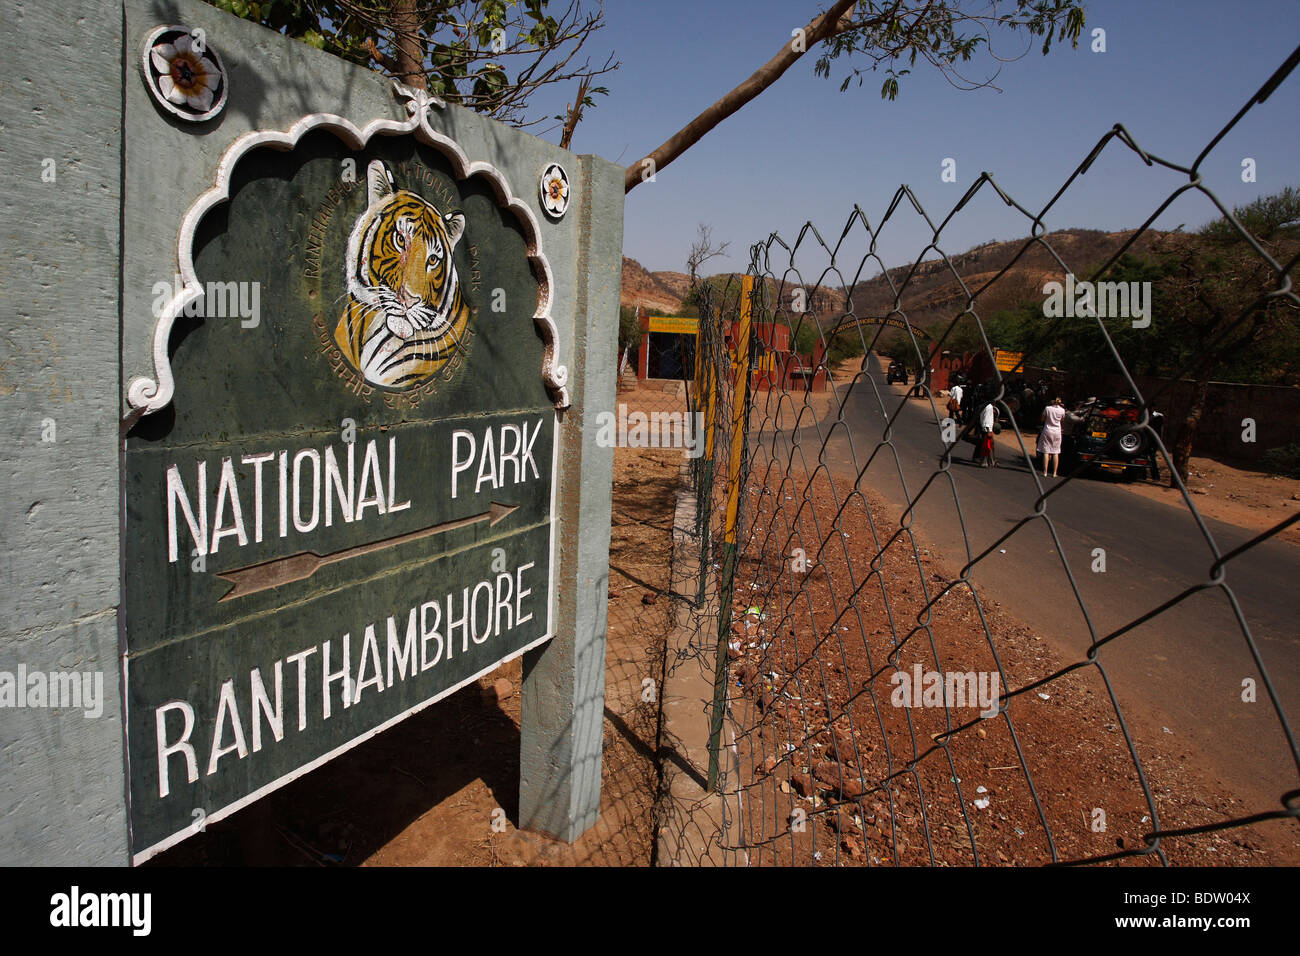 Le parc national de Ranthambore impressionen aus dem en indien, les impressions sur le parc national de Ranthambore en Inde Banque D'Images